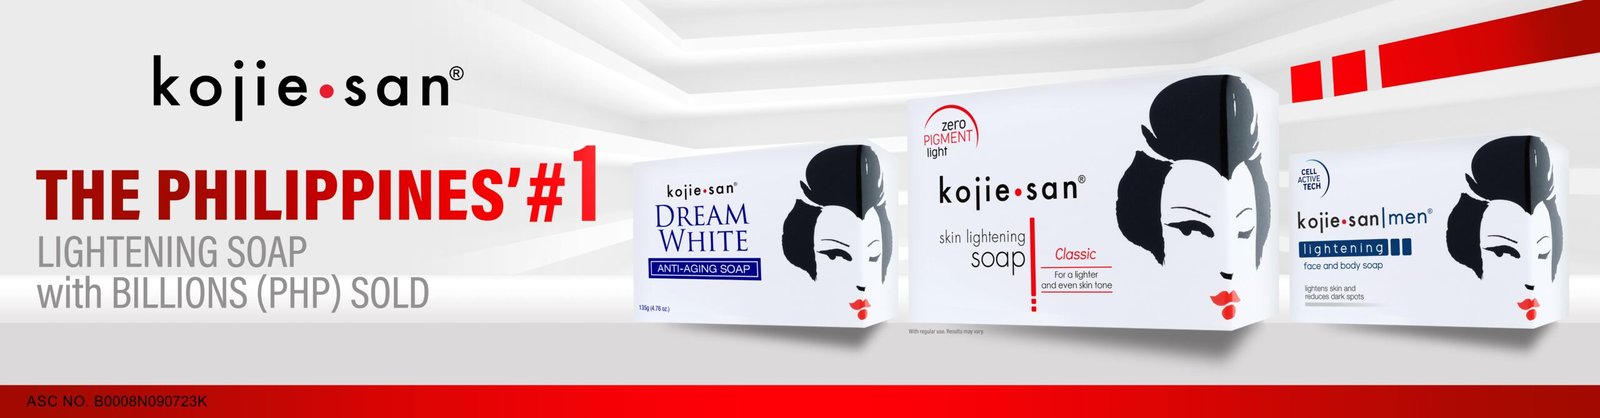 Kojie.san hailed as NielsenIQ’s #1 Lightening Soap